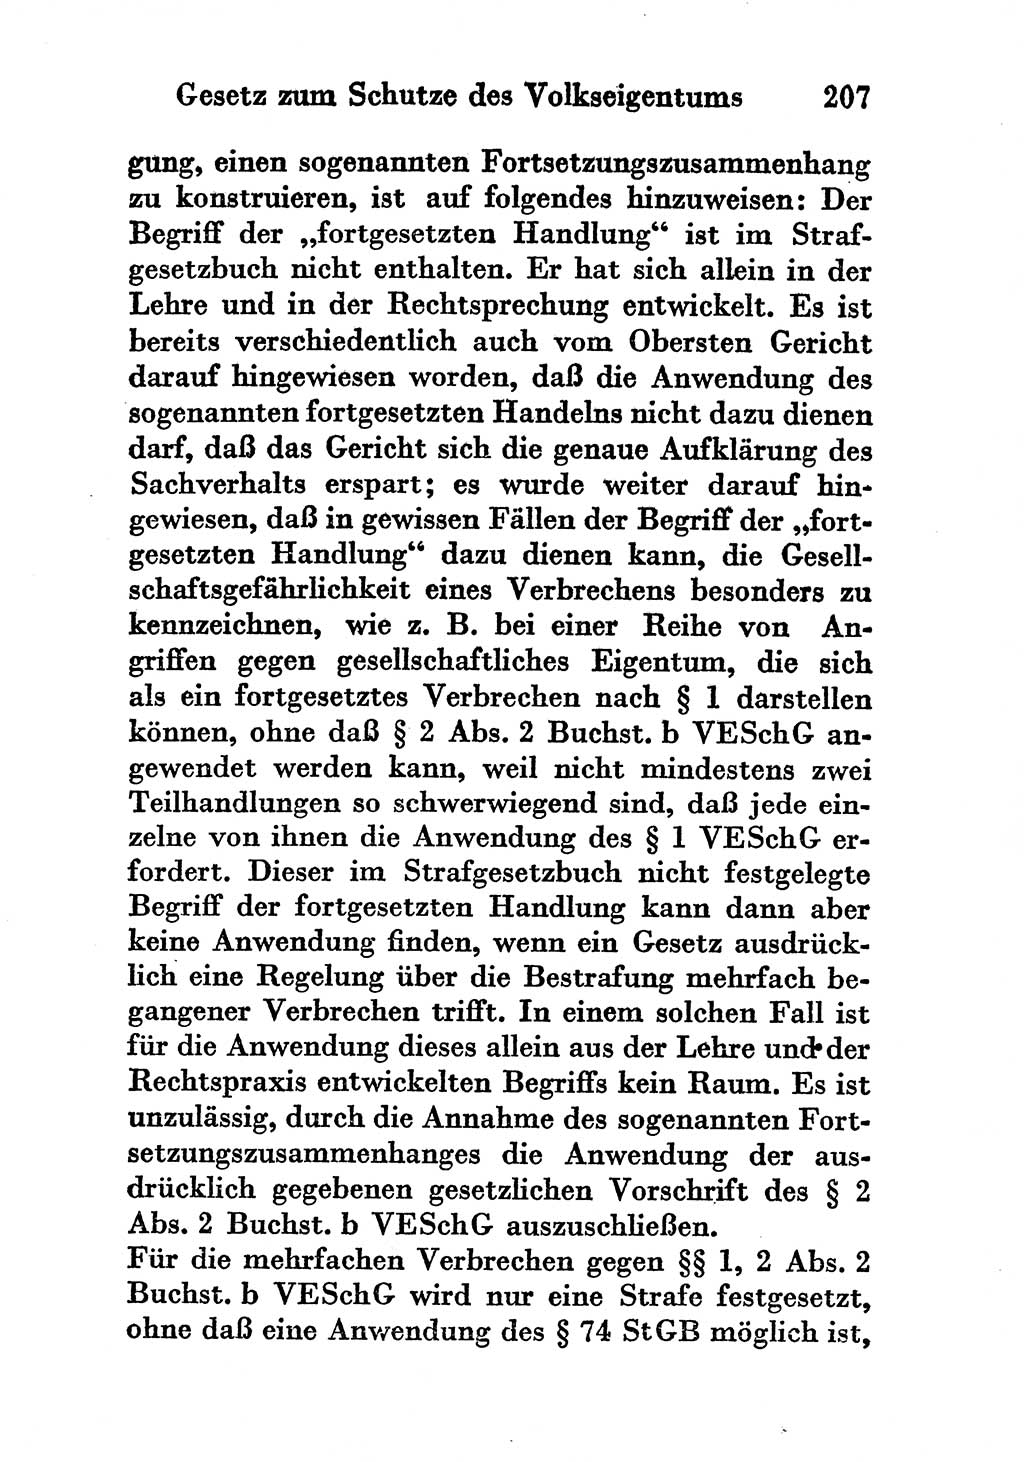 Strafgesetzbuch (StGB) und andere Strafgesetze [Deutsche Demokratische Republik (DDR)] 1956, Seite 207 (StGB Strafges. DDR 1956, S. 207)